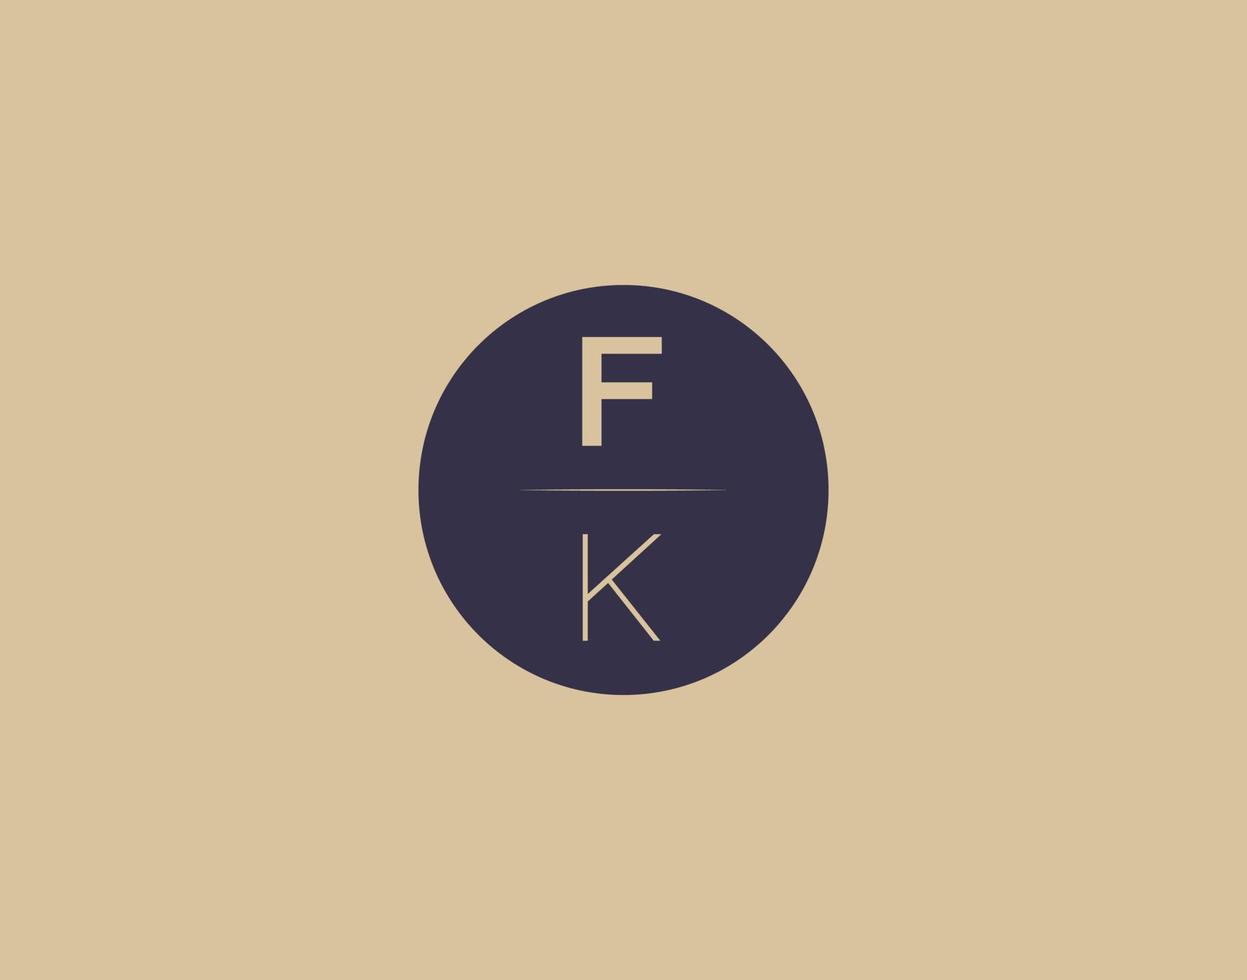 fk brief modern elegant logo ontwerp vector afbeeldingen